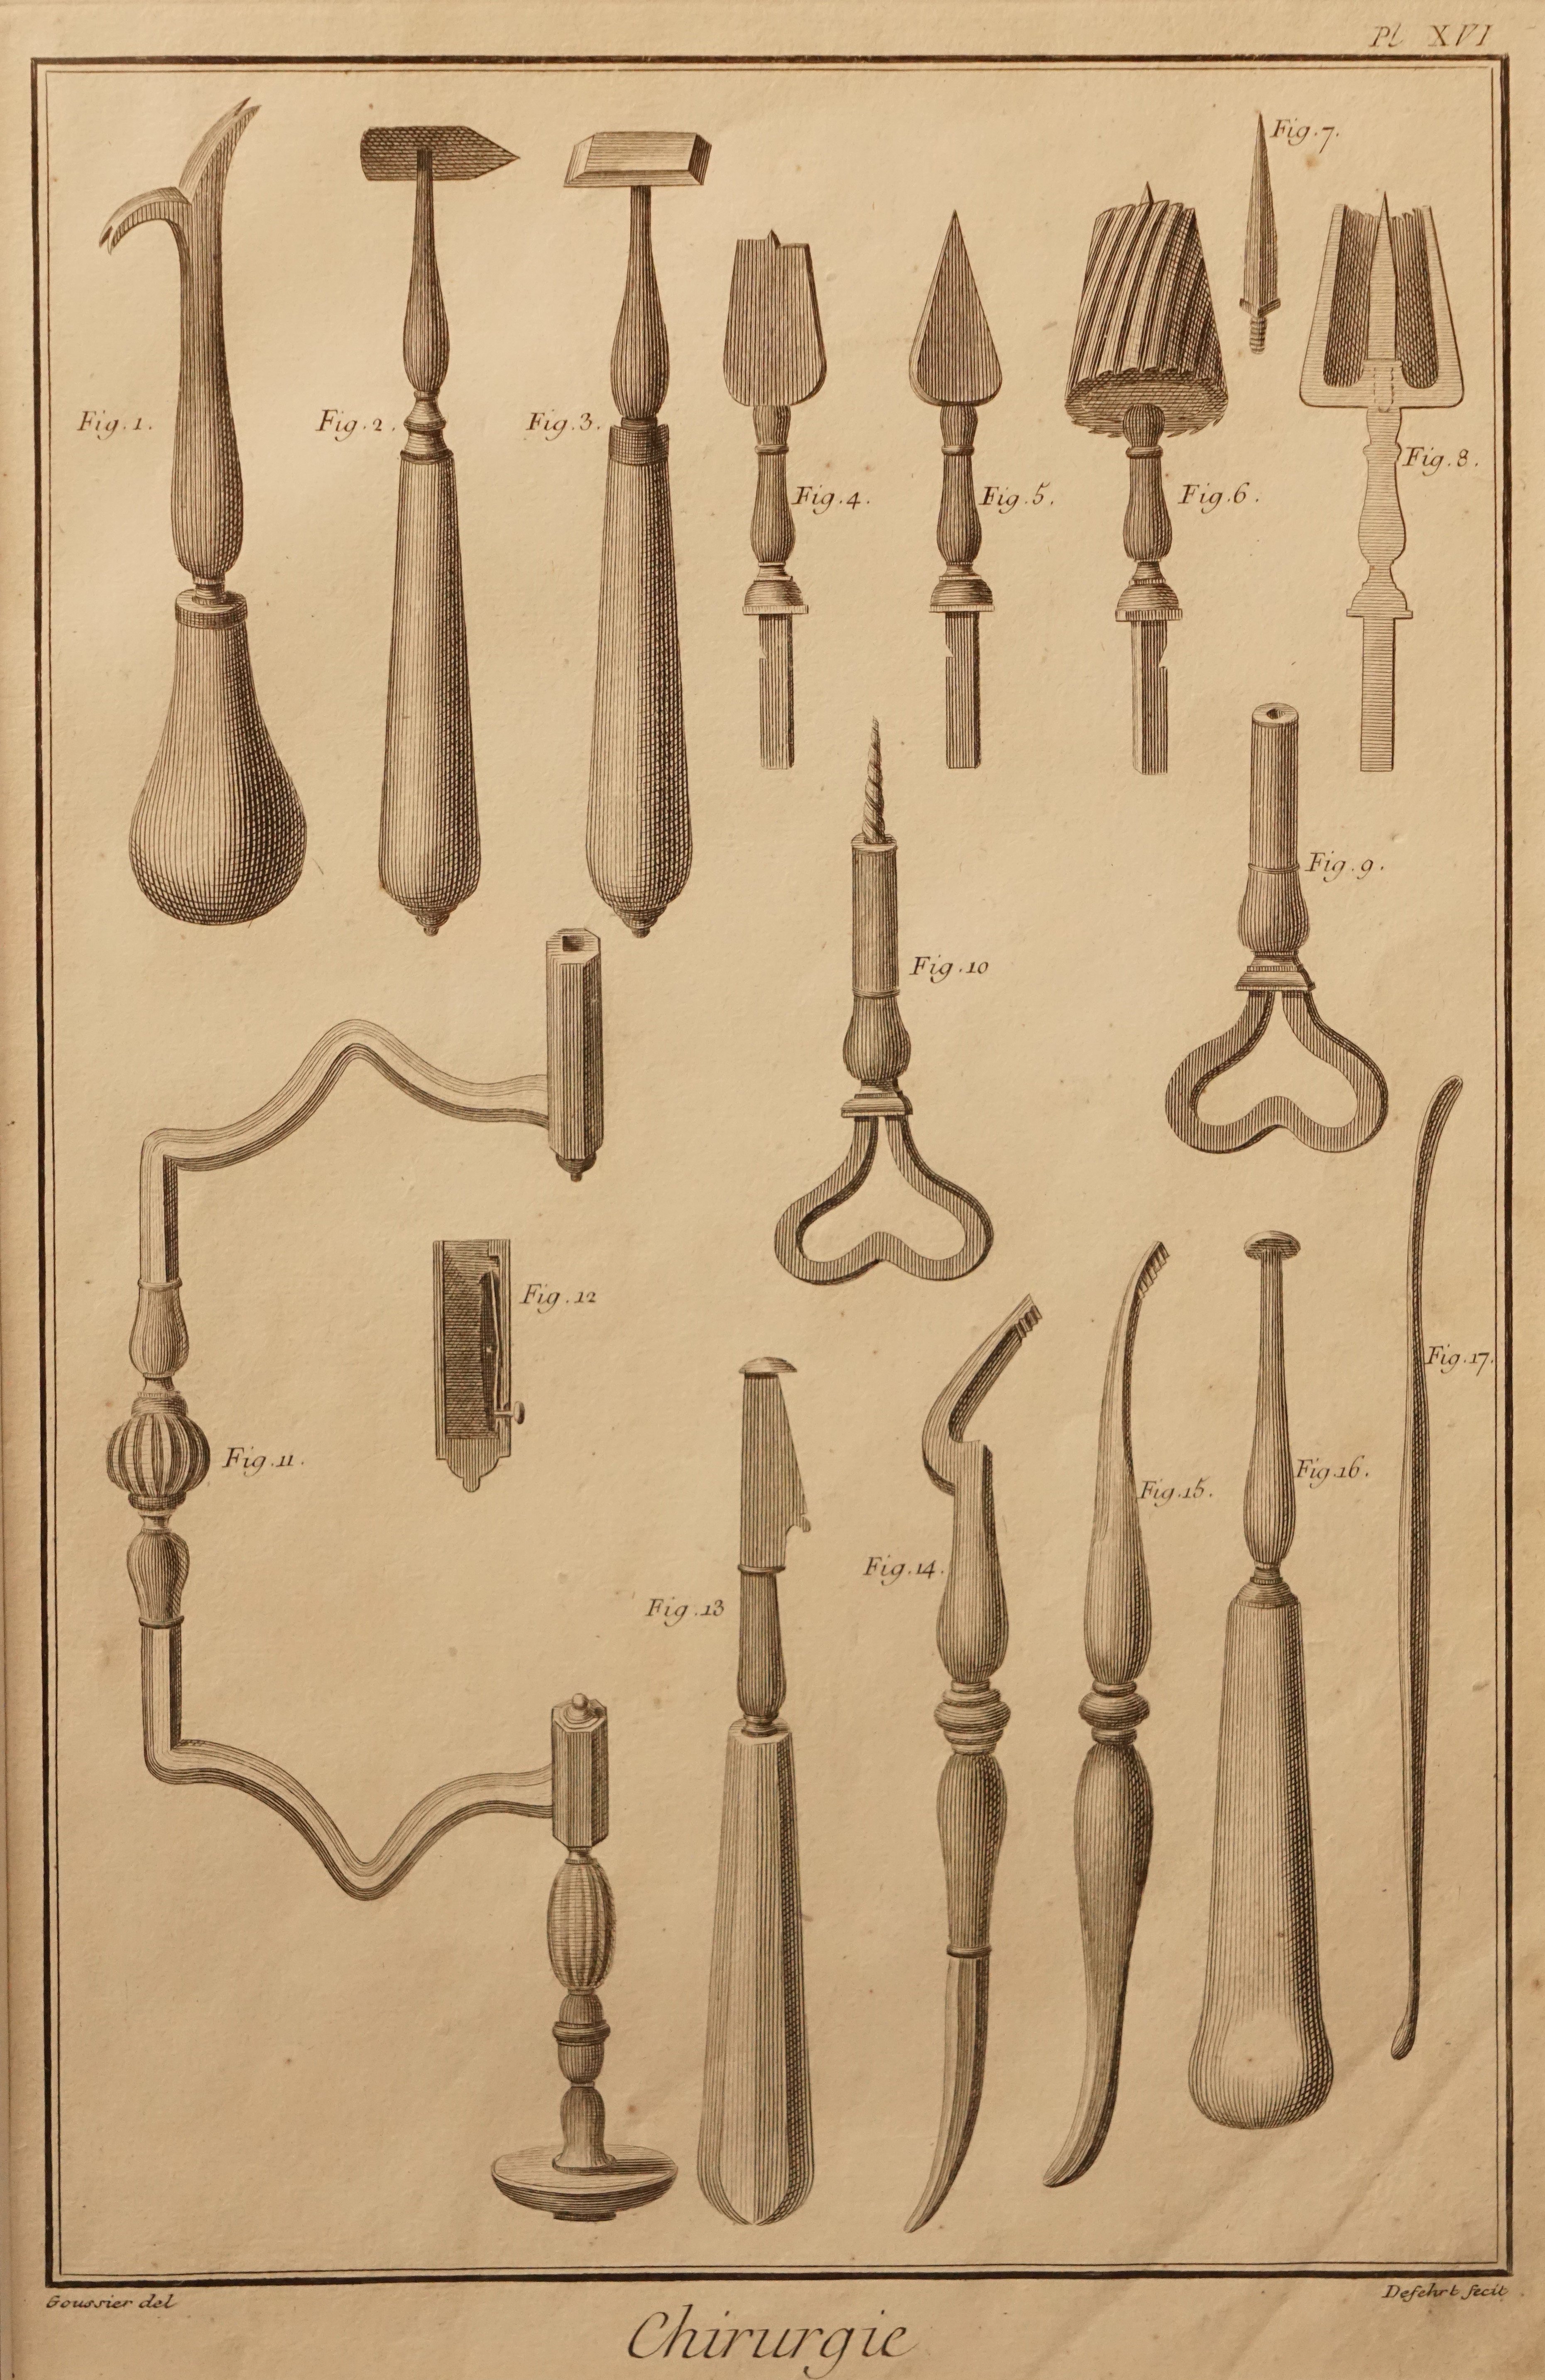 Chirurgische Instrumente - Abbildung PL XVI (Krankenhausmuseum Bielefeld e.V. CC BY-NC-SA)